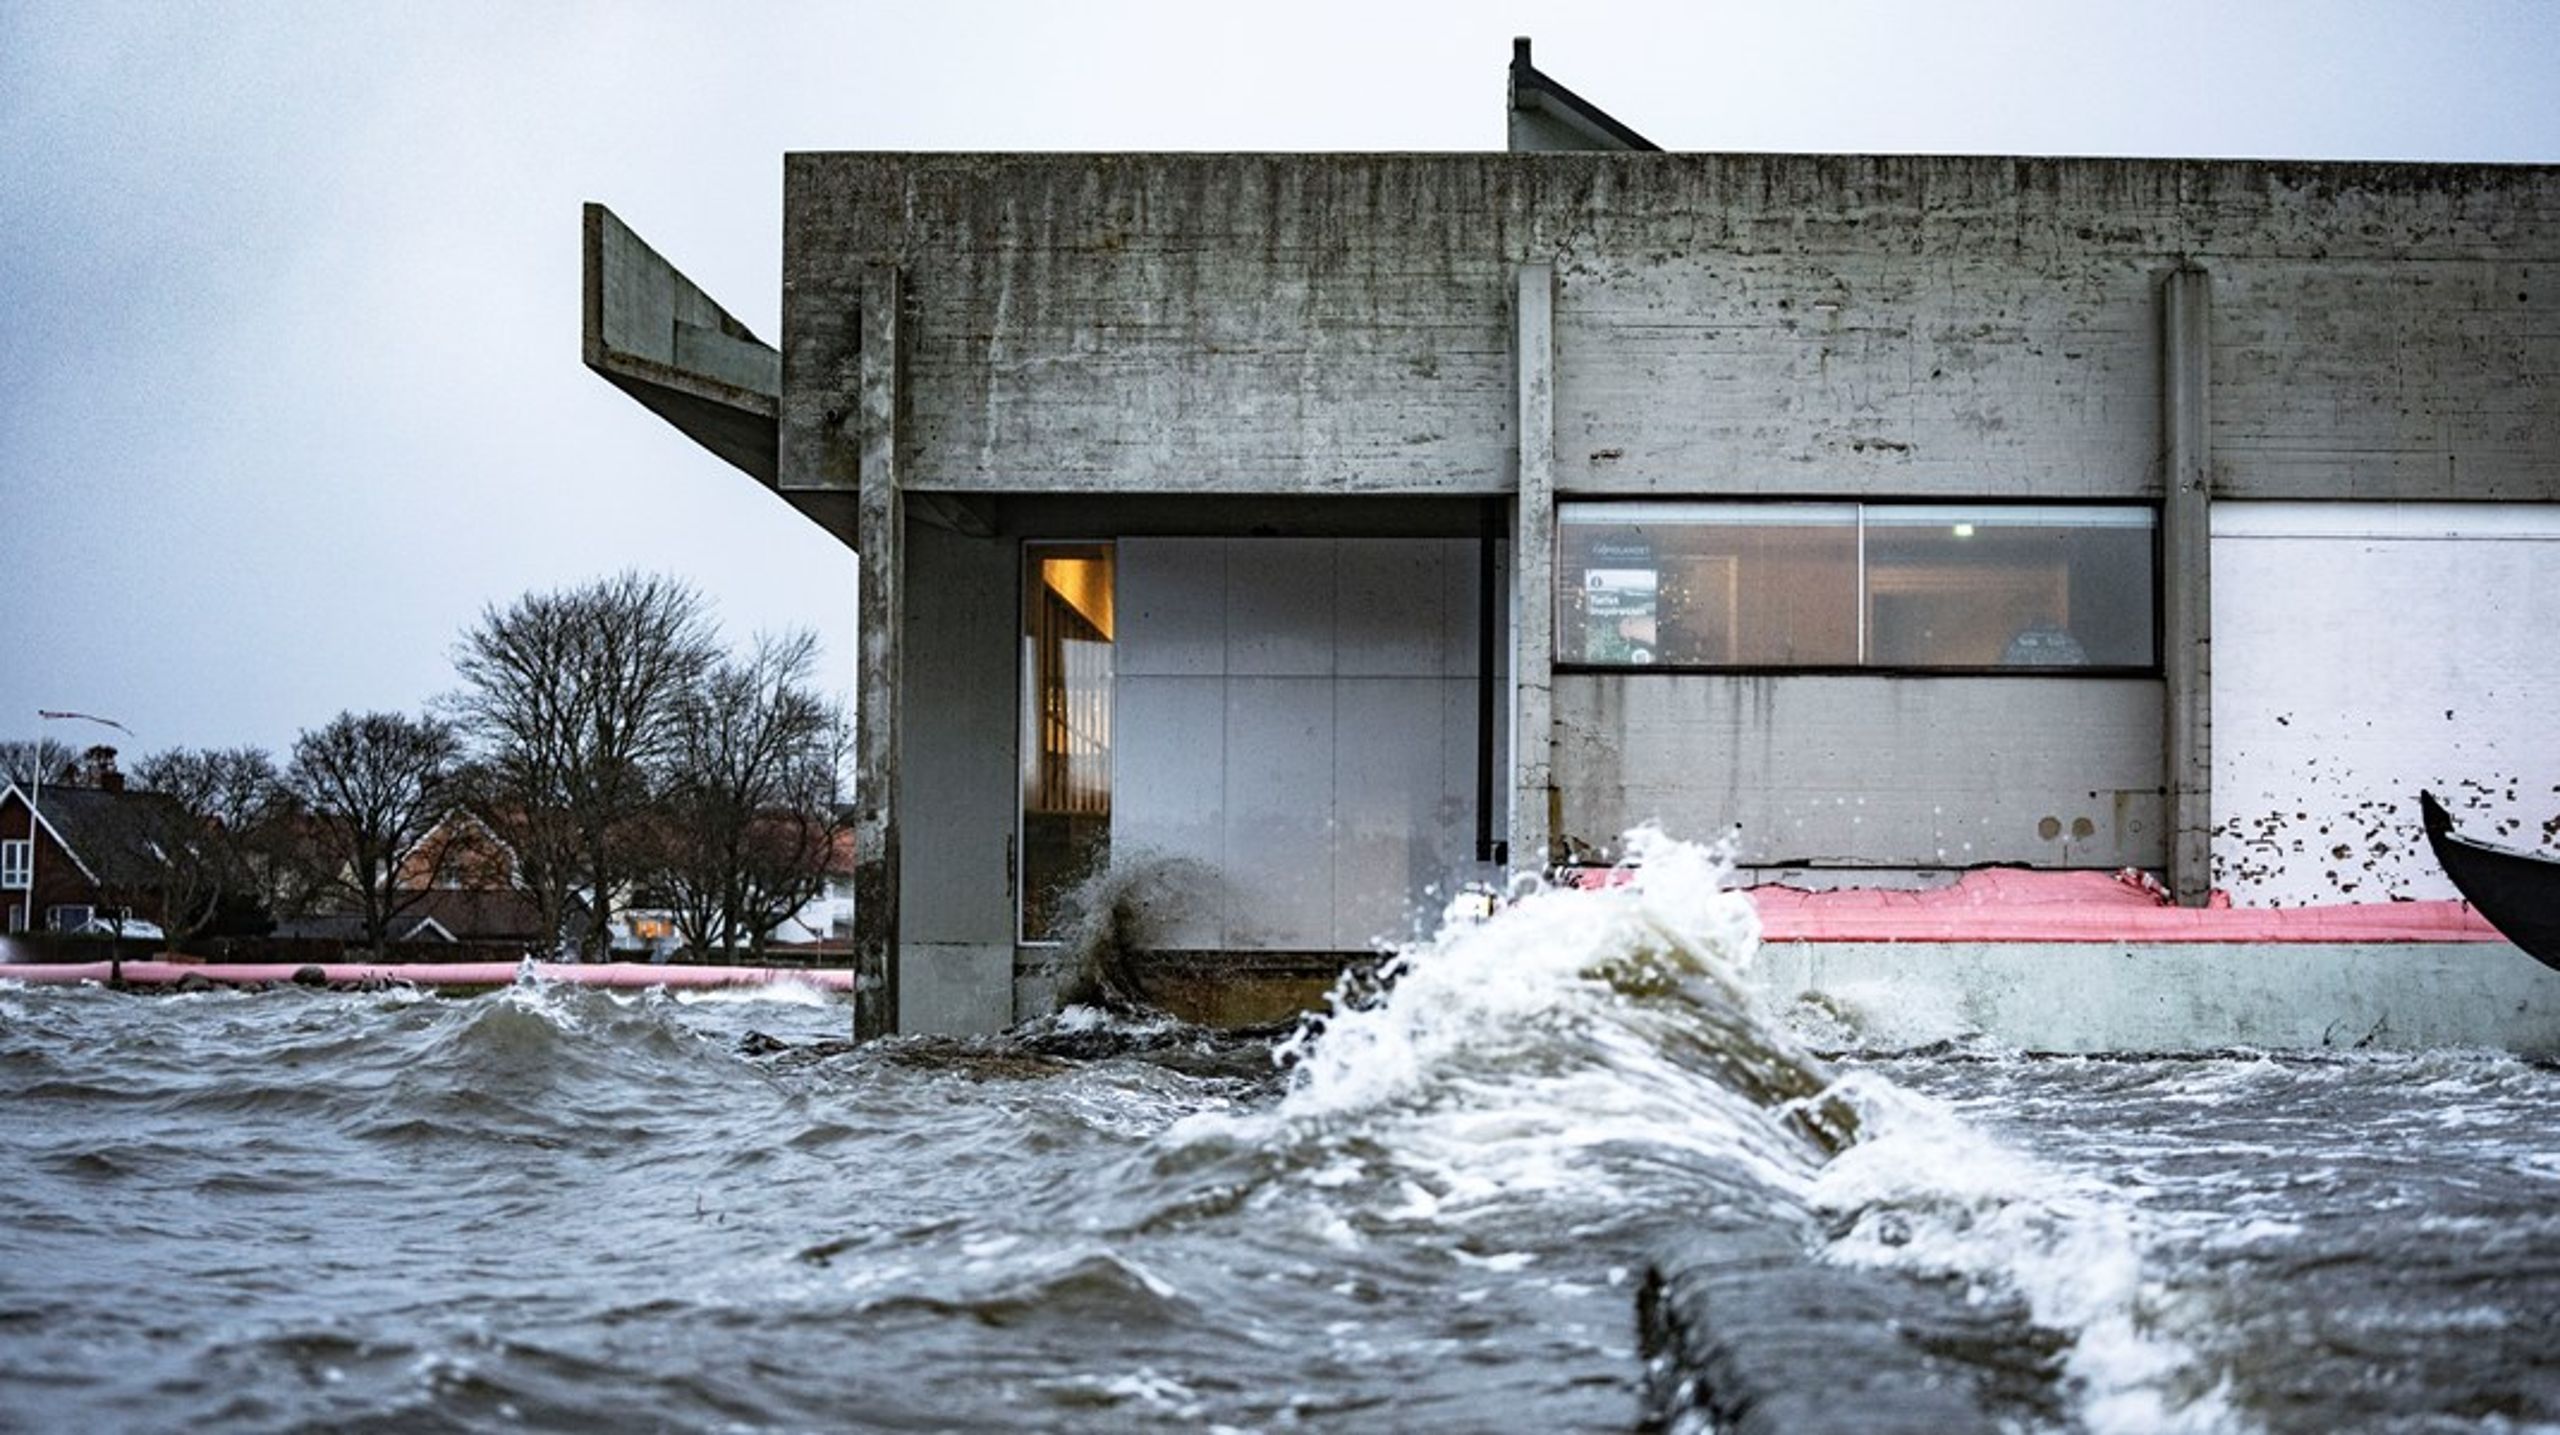 Gennem naturgenopretning kan Danmark eksempelvis styrke vores beskyttelse mod ekstreme vejrforhold som storme og oversvømmelser, skriver&nbsp;Peter Andreas Norn.